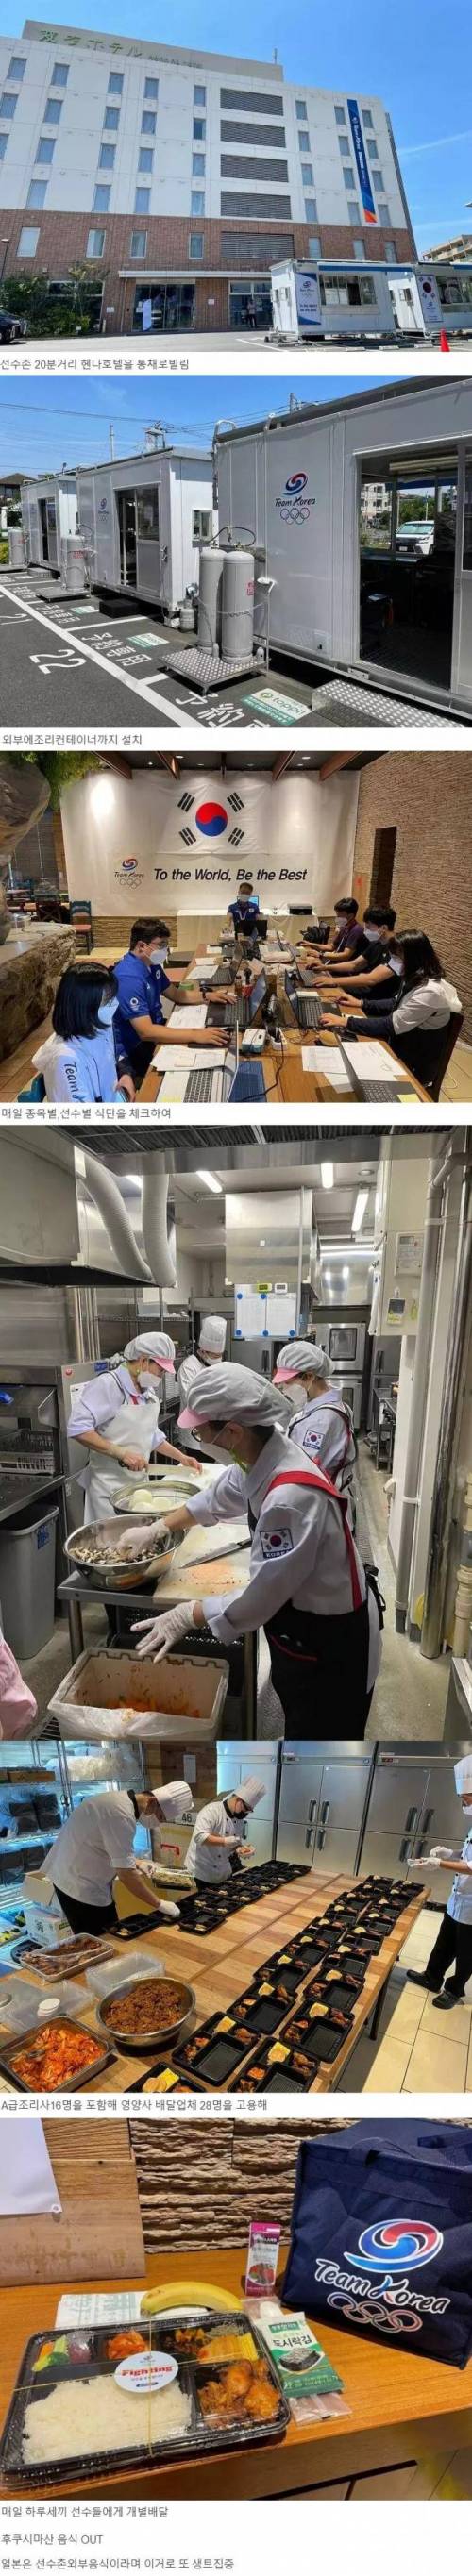 도쿄올림픽 한국선수단 음식준비 과정.jpg